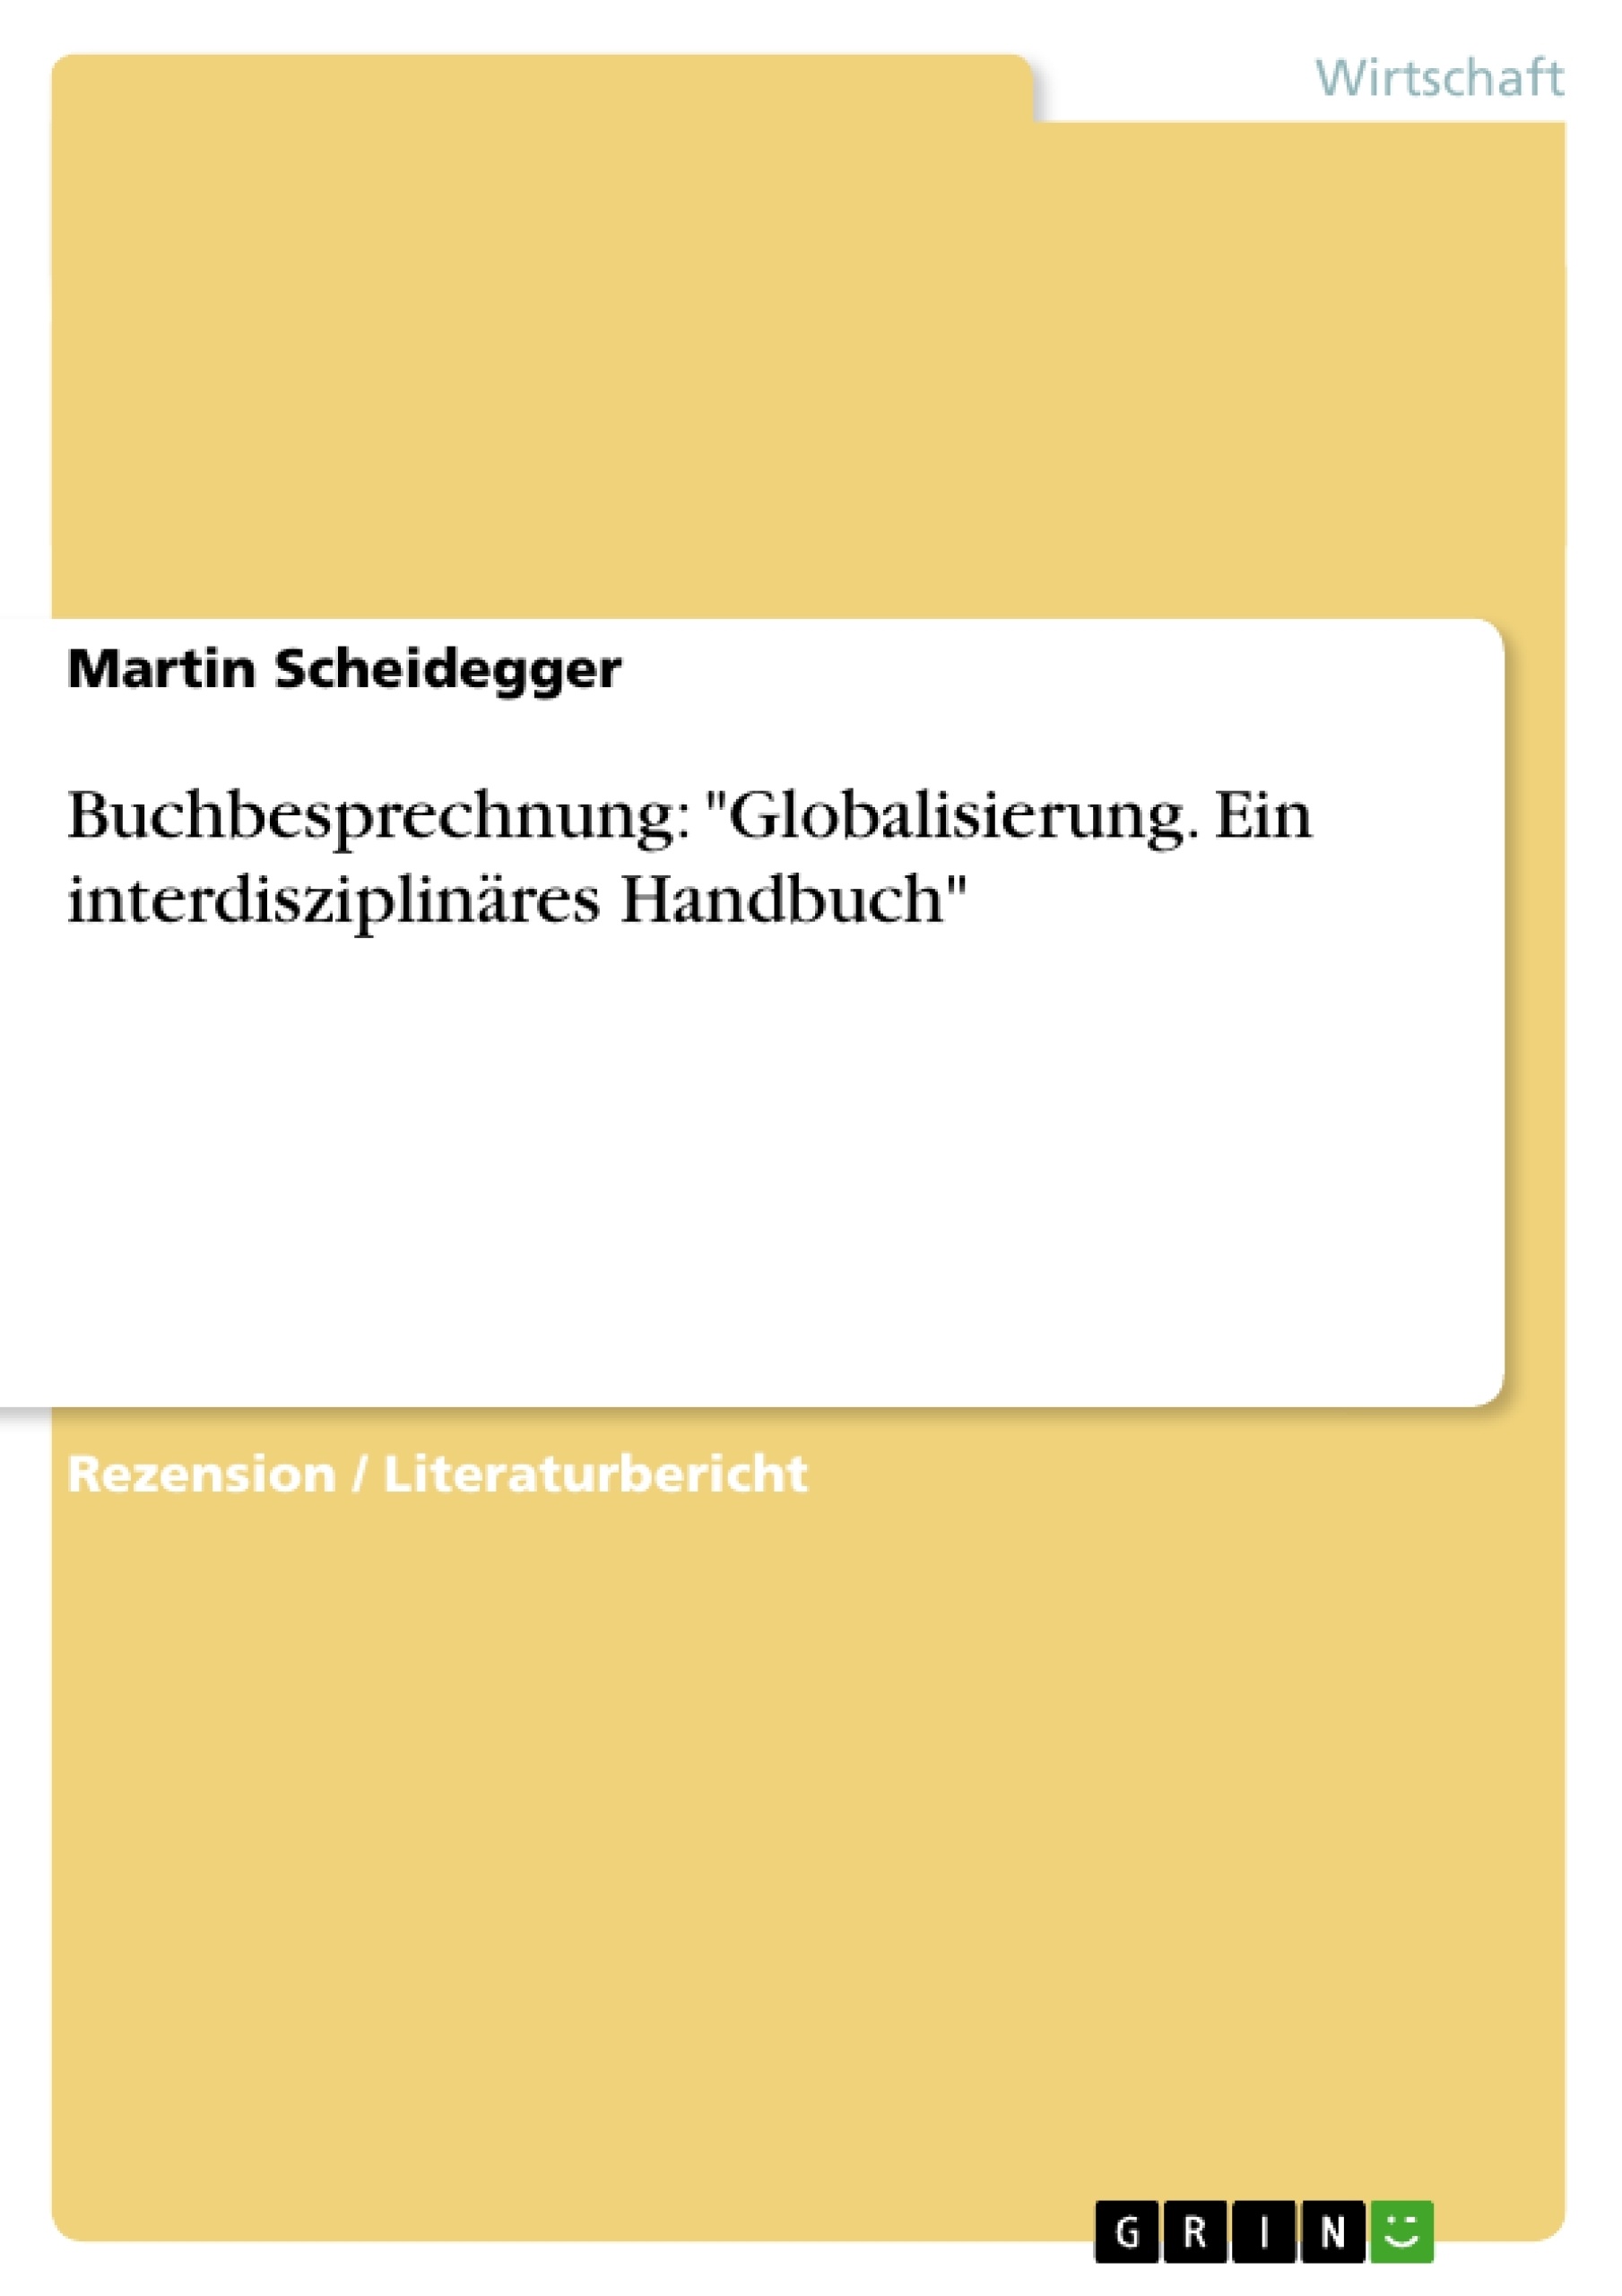 Titel: Buchbesprechnung: "Globalisierung. Ein interdisziplinäres Handbuch"